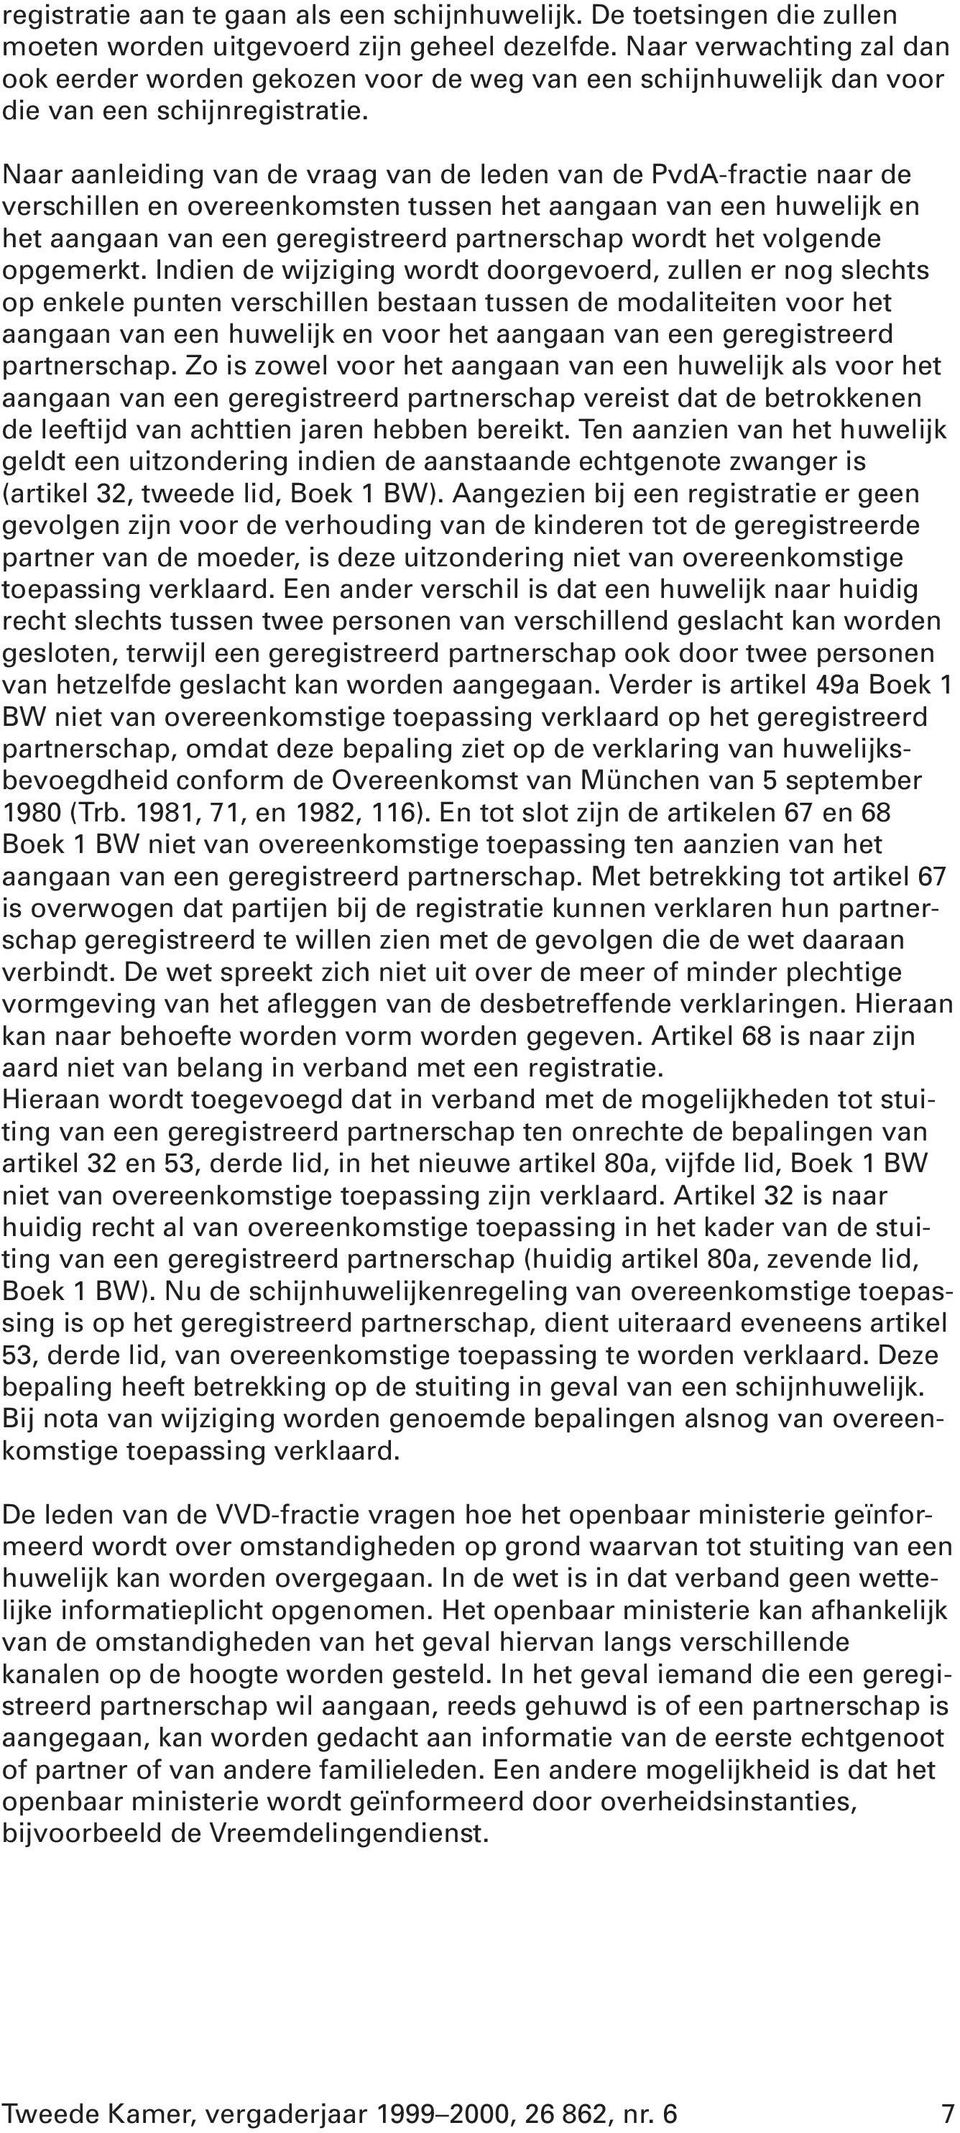 Naar aanleiding van de vraag van de leden van de PvdA-fractie naar de verschillen en overeenkomsten tussen het aangaan van een huwelijk en het aangaan van een geregistreerd partnerschap wordt het